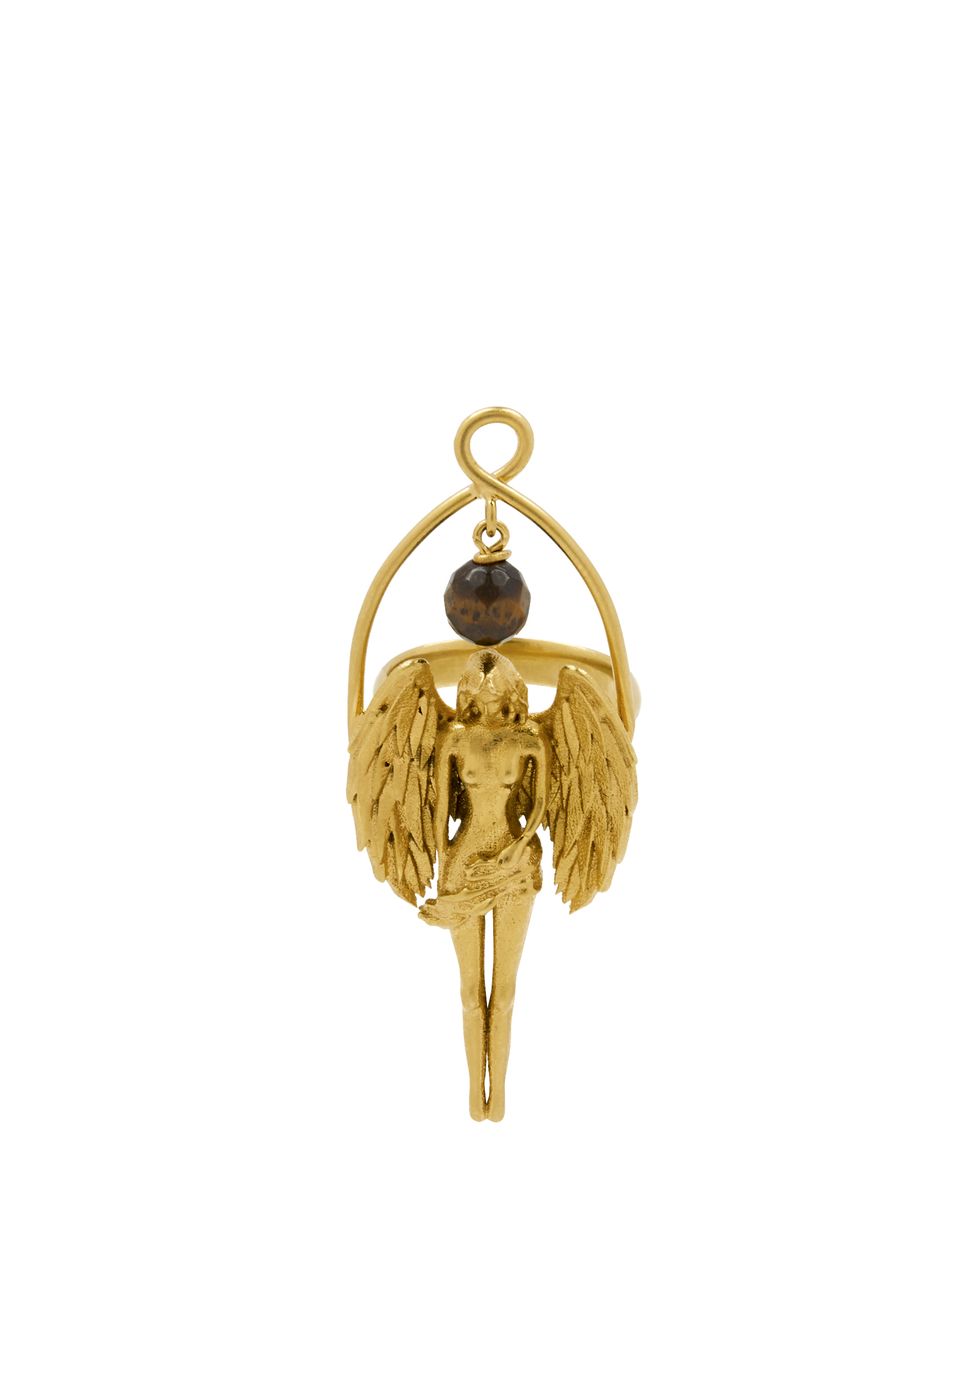 Givenchy Zodiac Jewelry